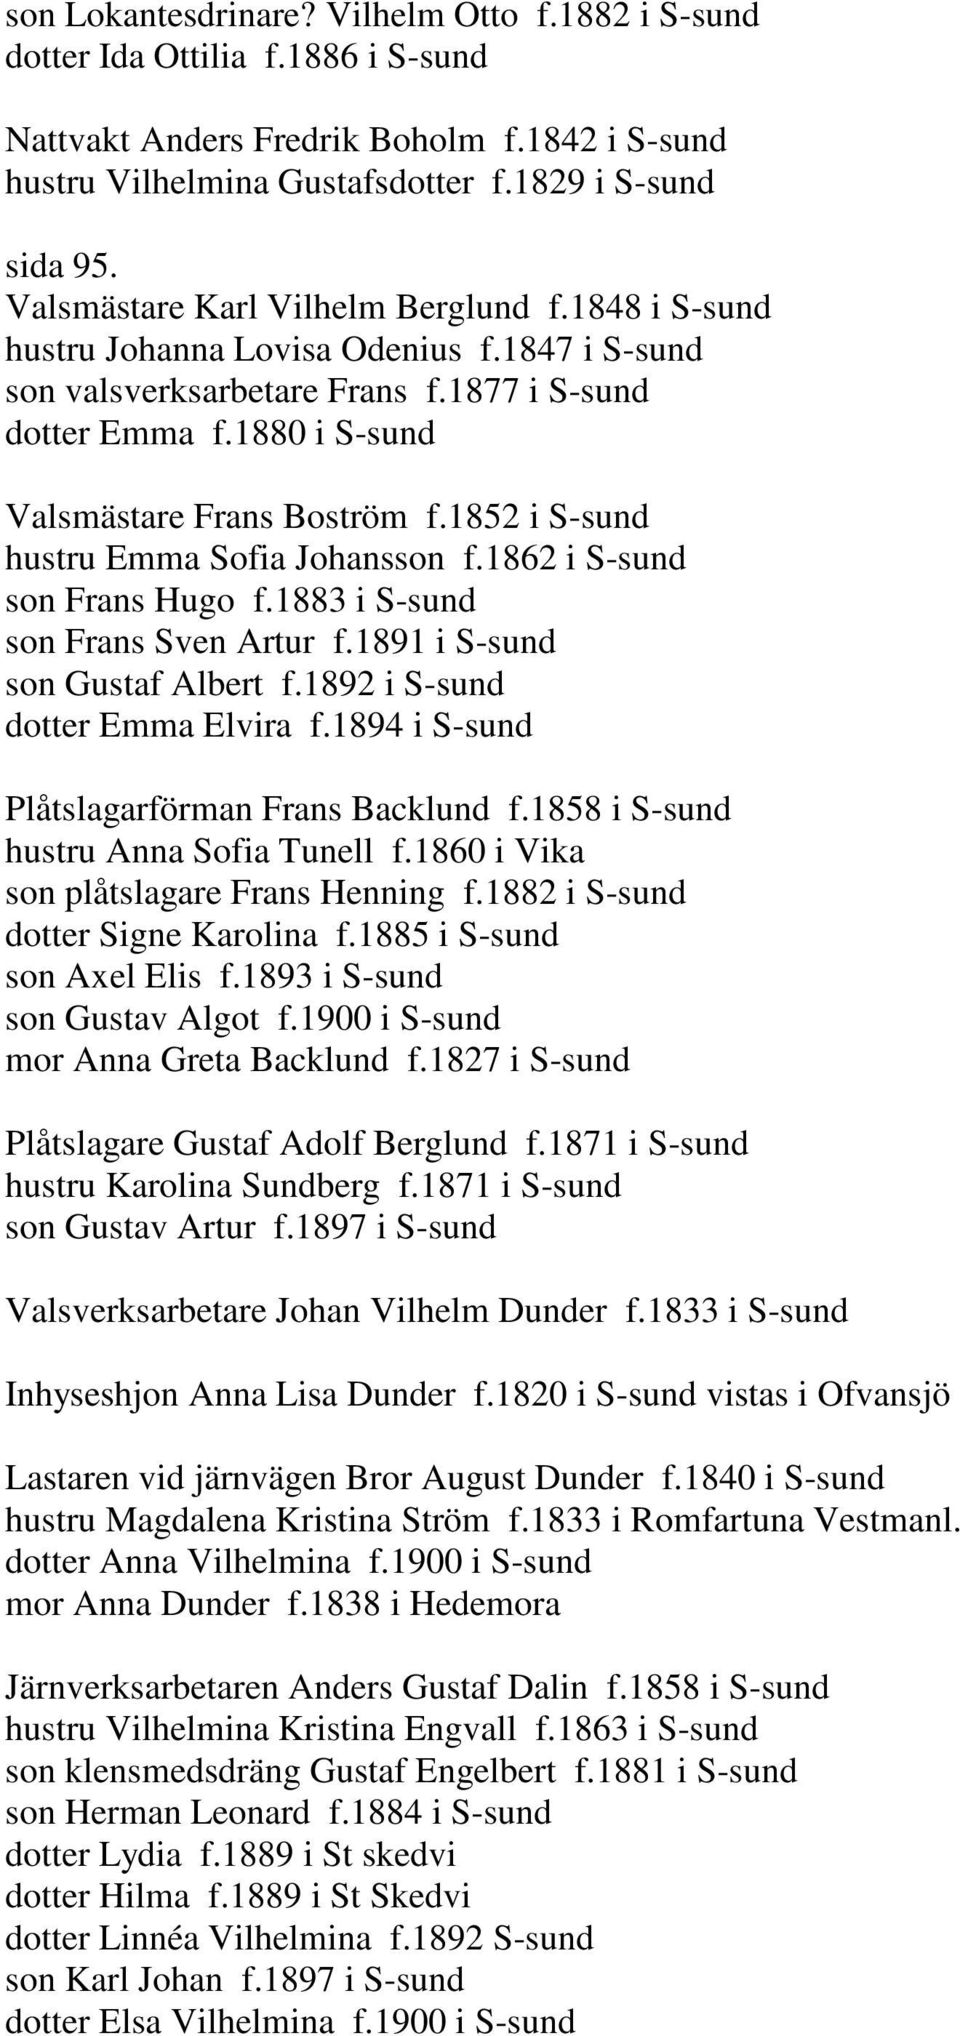 1852 i S-sund hustru Emma Sofia Johansson f.1862 i S-sund son Frans Hugo f.1883 i S-sund son Frans Sven Artur f.1891 i S-sund son Gustaf Albert f.1892 i S-sund dotter Emma Elvira f.